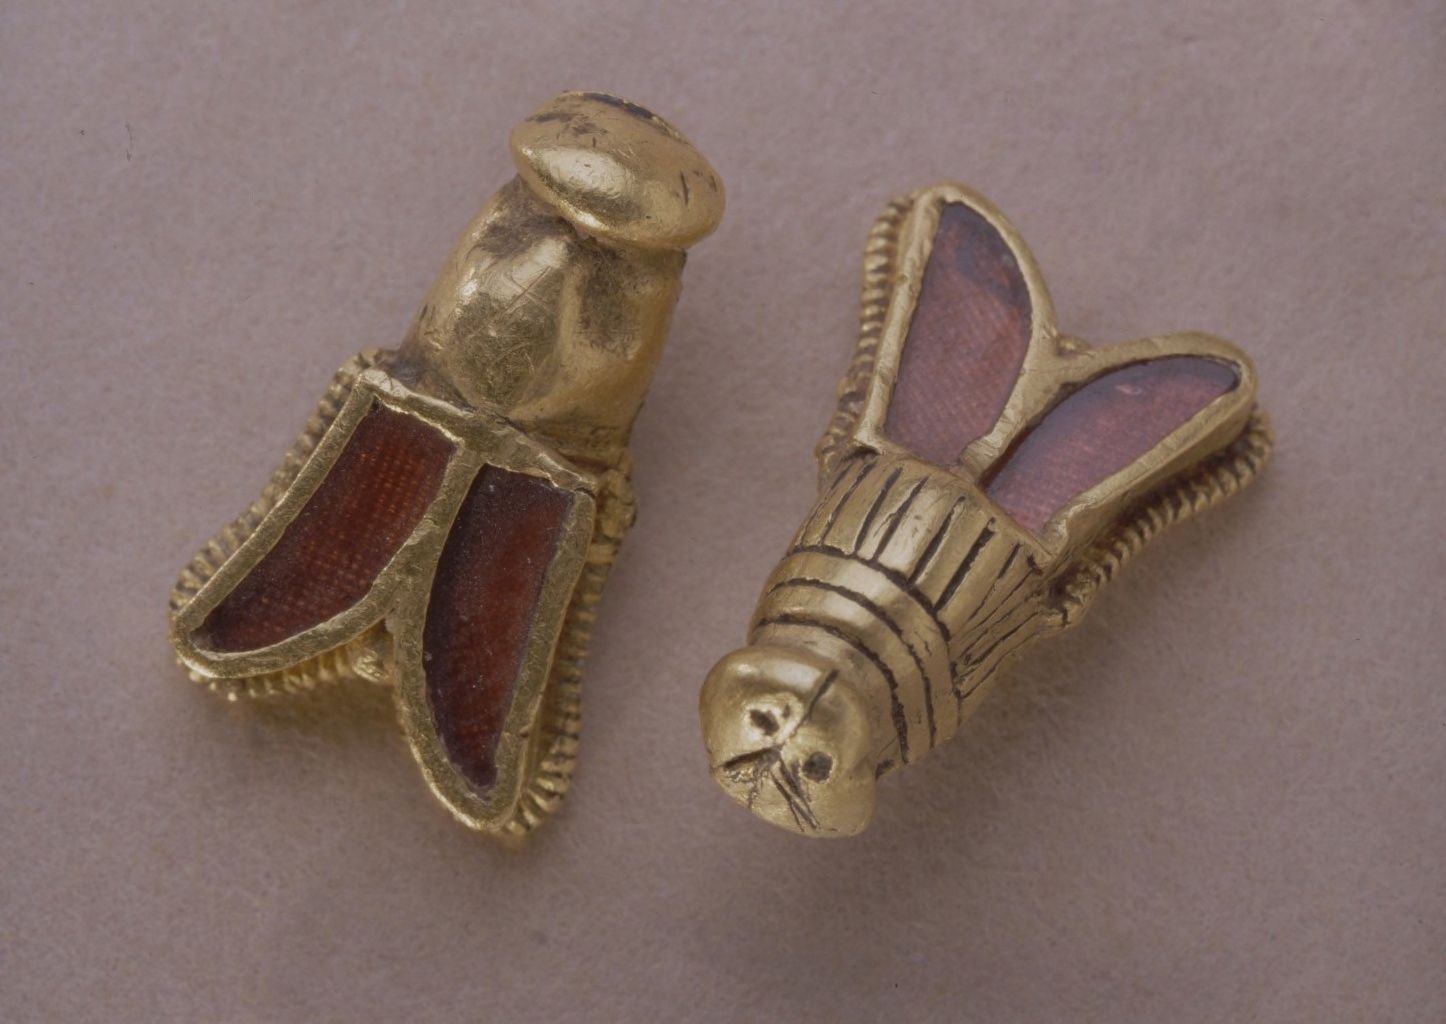 Abejas de oro que formaban parte del ajuar de Childerico - Orígenes de Europa